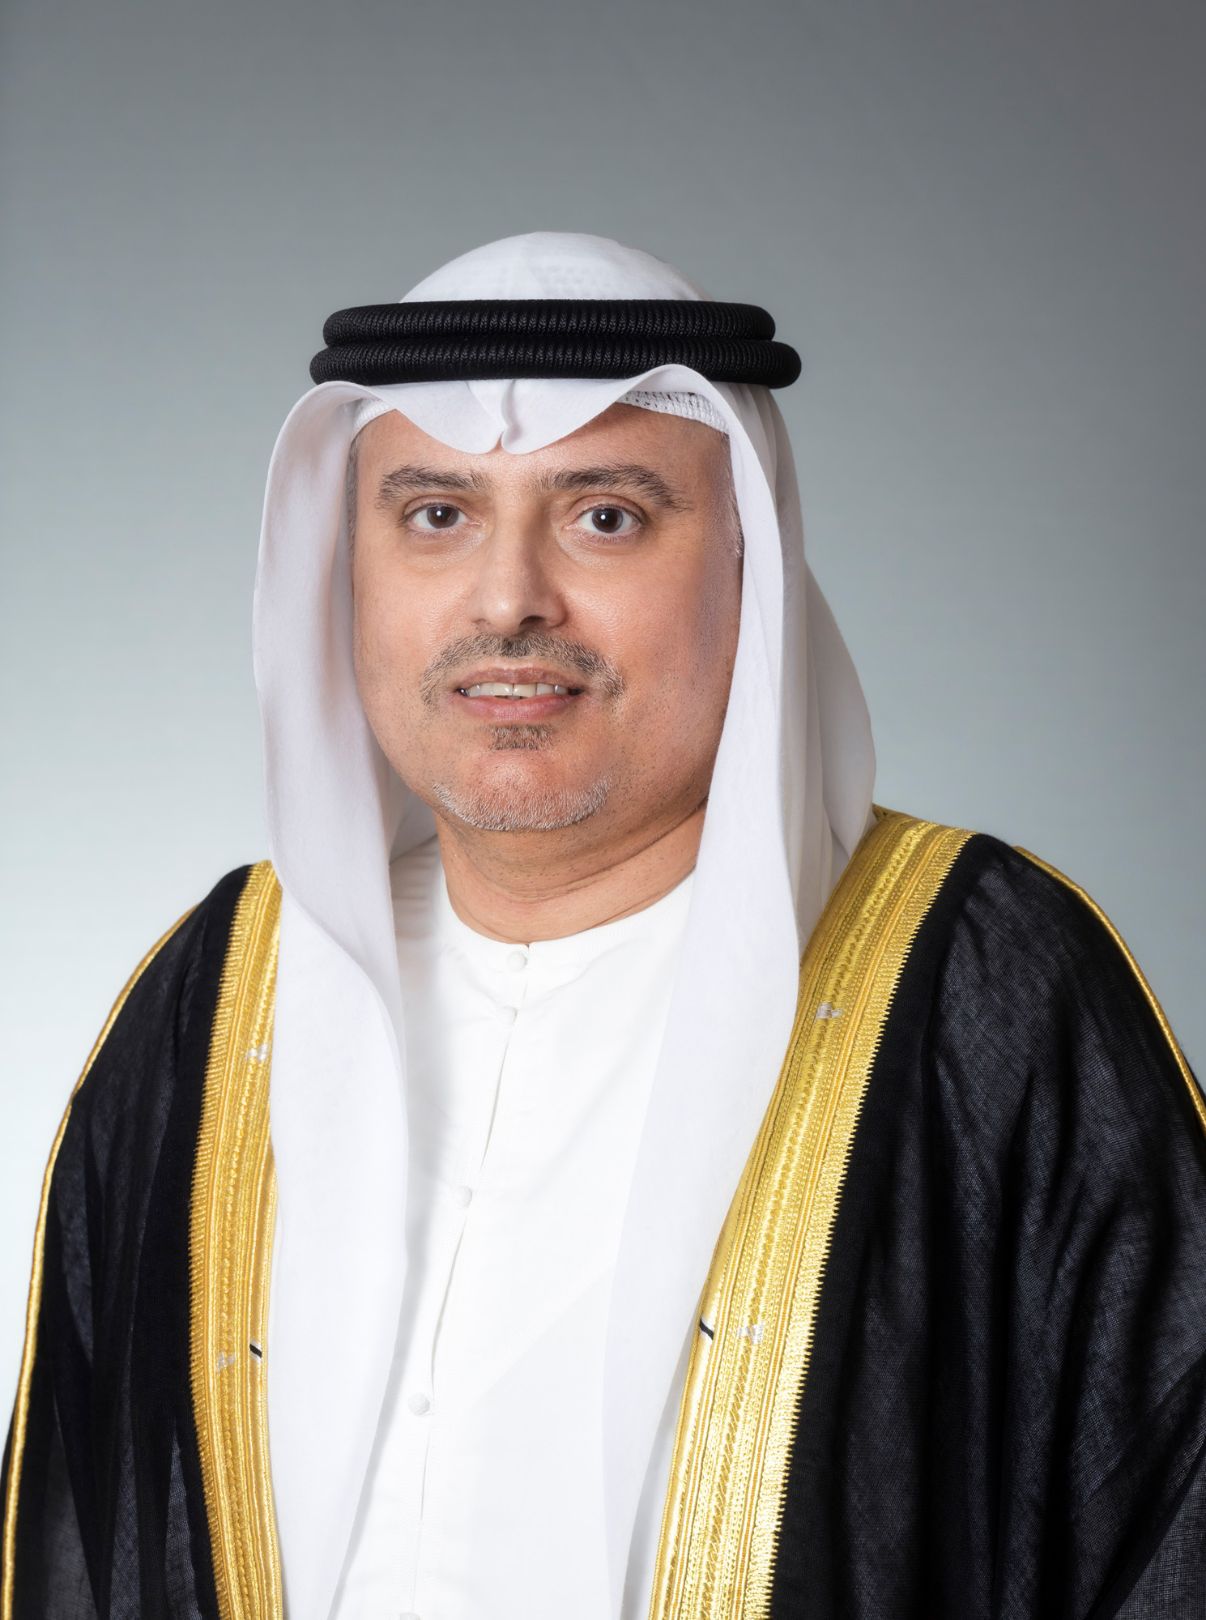 HE. Dr. Abdulrahman Abdulmannan Al Awar